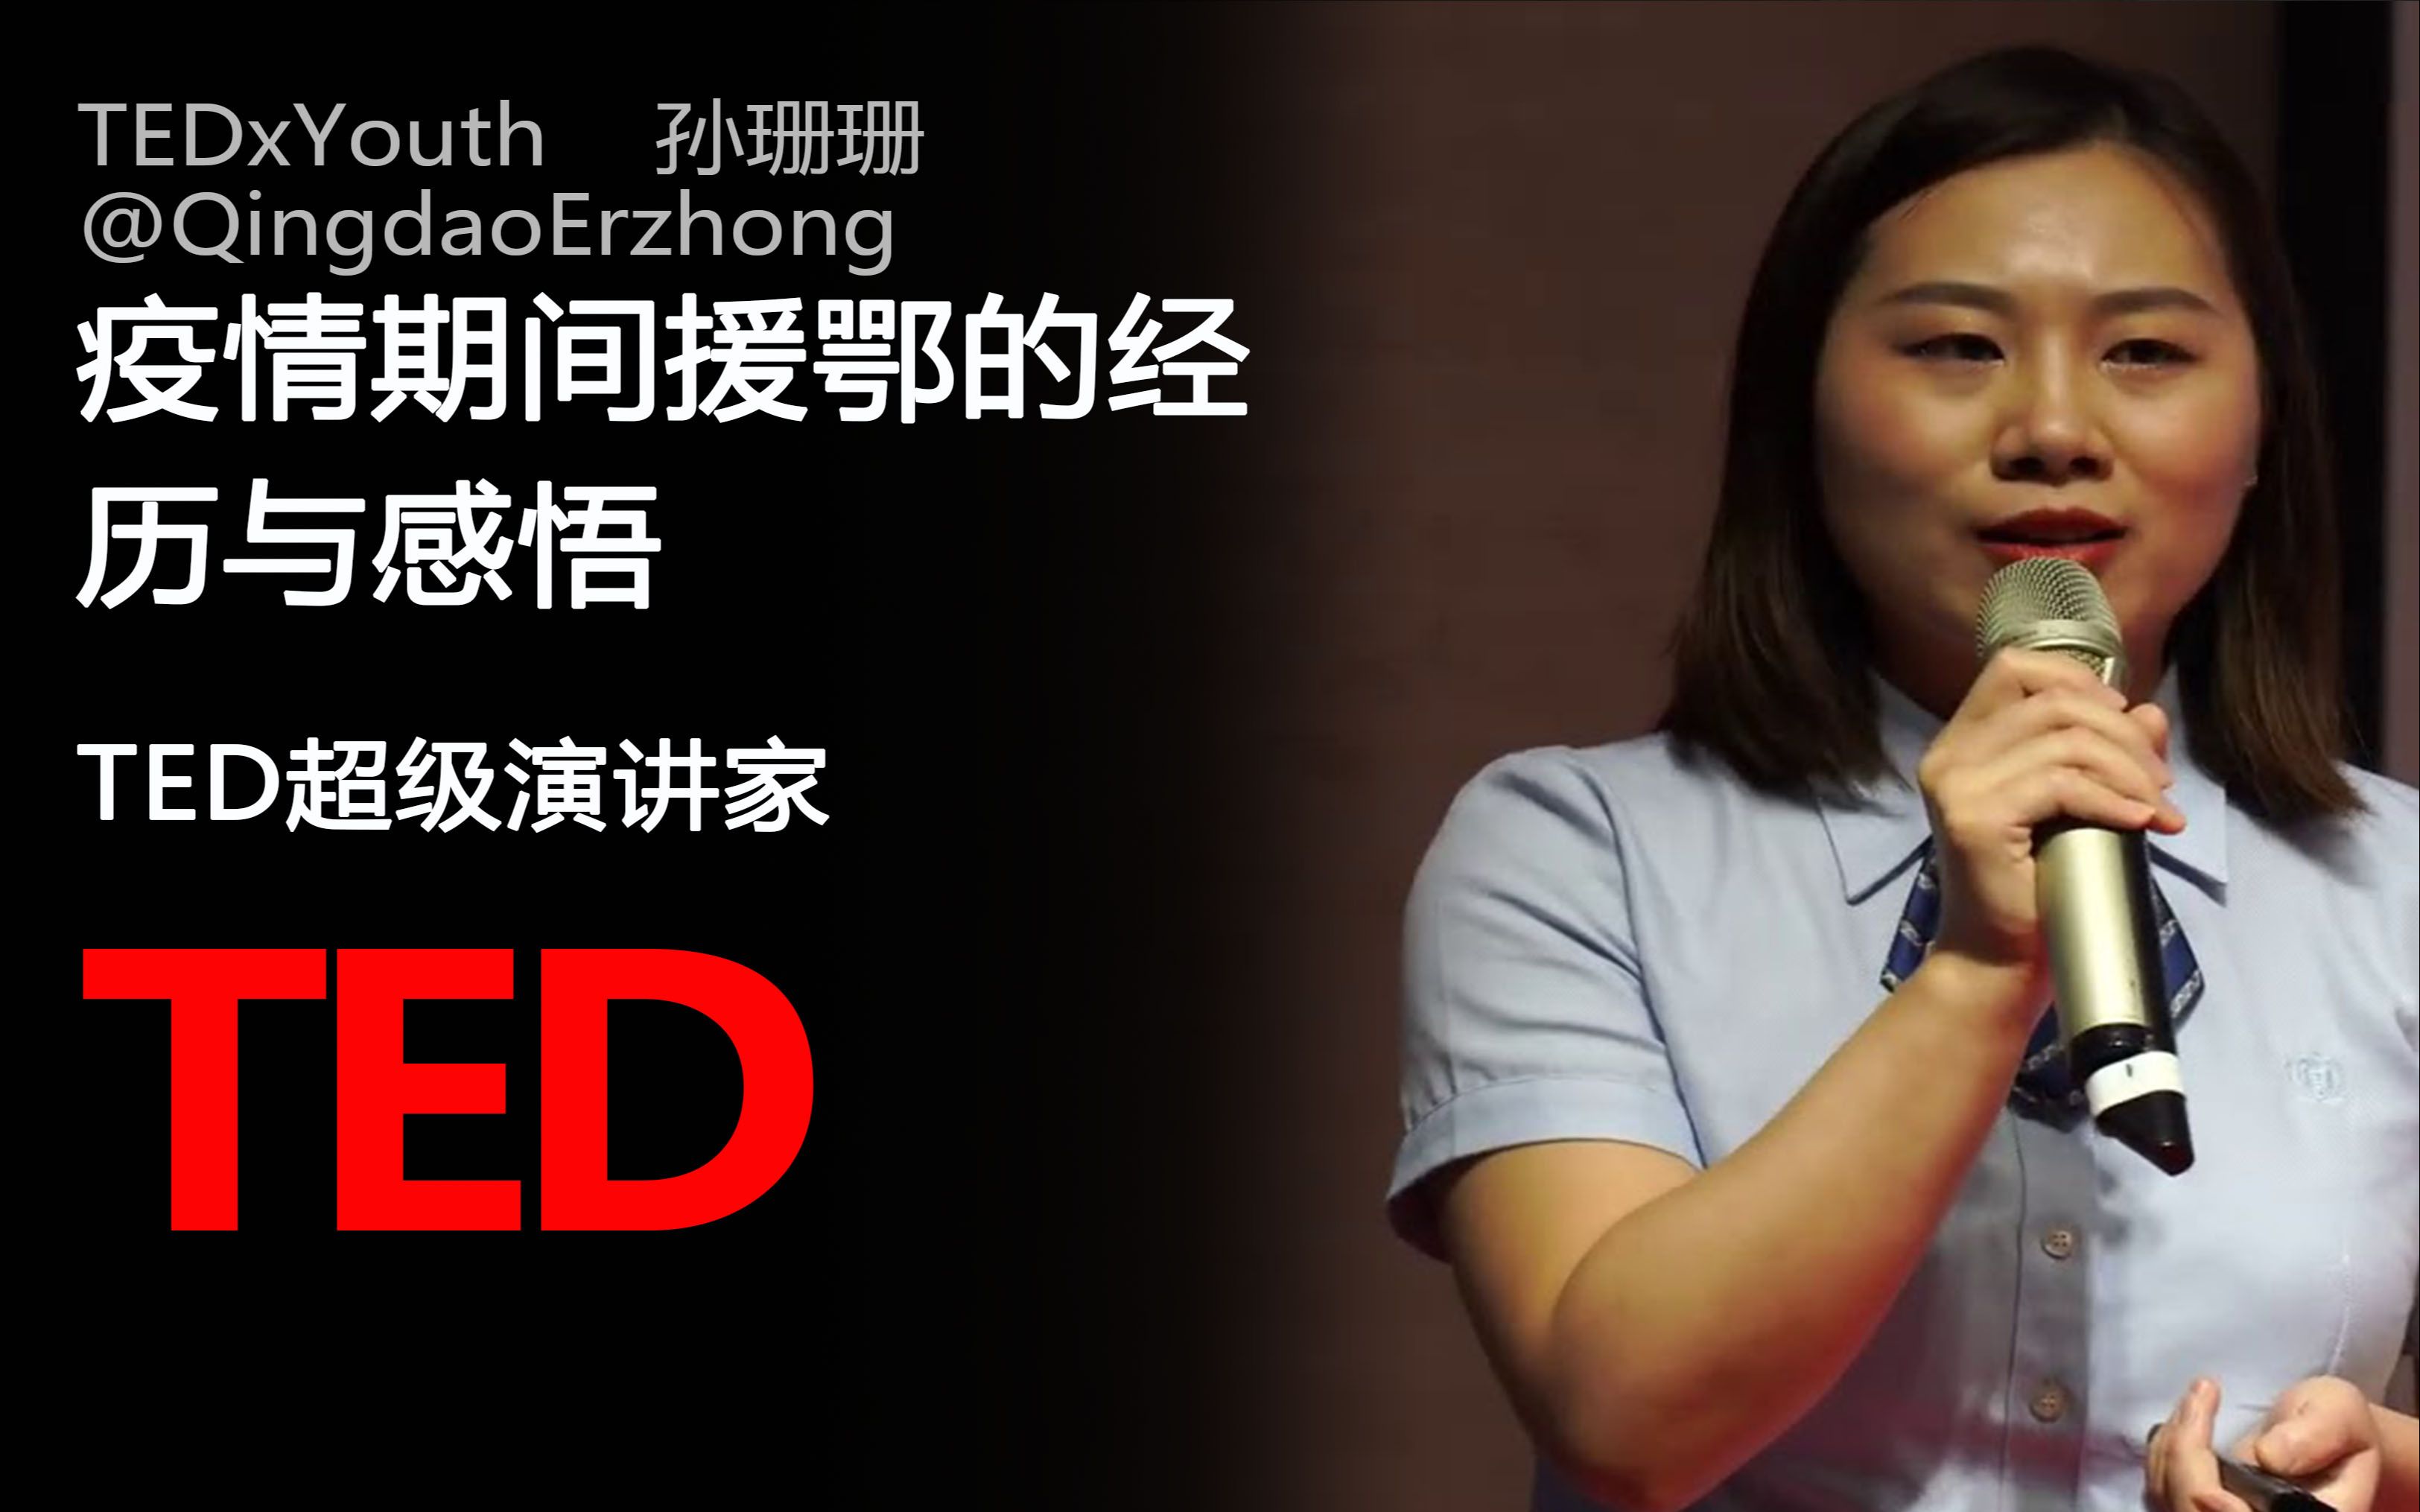 【TED演讲】疫情期间援鄂的经历与感悟 — 孙珊珊 _ TEDxYouth@QingdaoErzhong